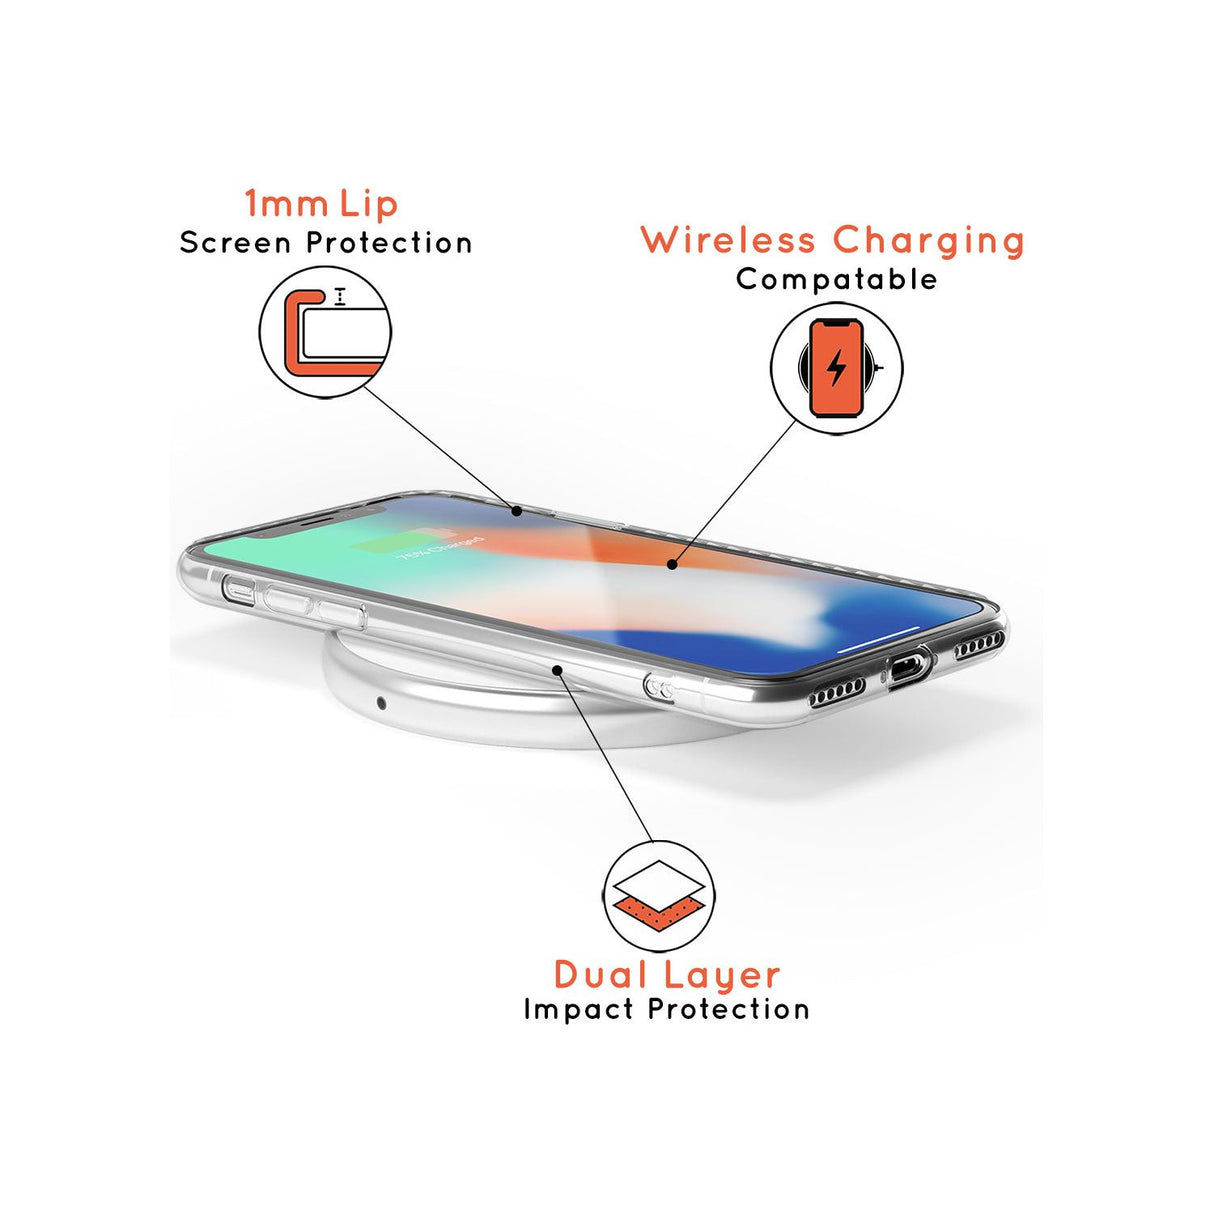 Pisces Emblem - Transparent Design Slim TPU Phone Case for iPhone SE 8 7 Plus